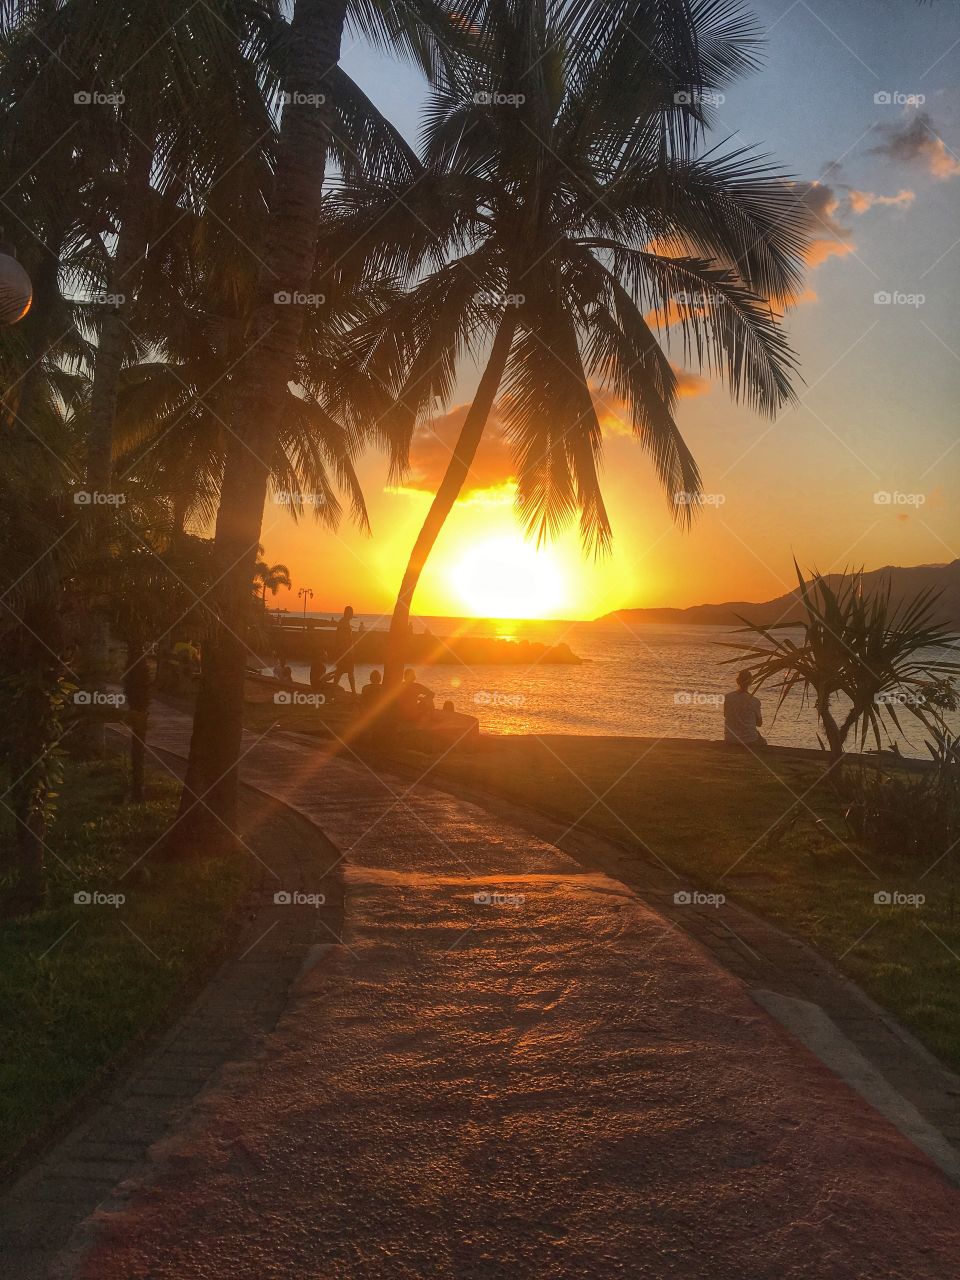 Incrível pôr do sol na praia de Ilhabela/SP. Existe coisa mais linda que um belo dia desses na praia?